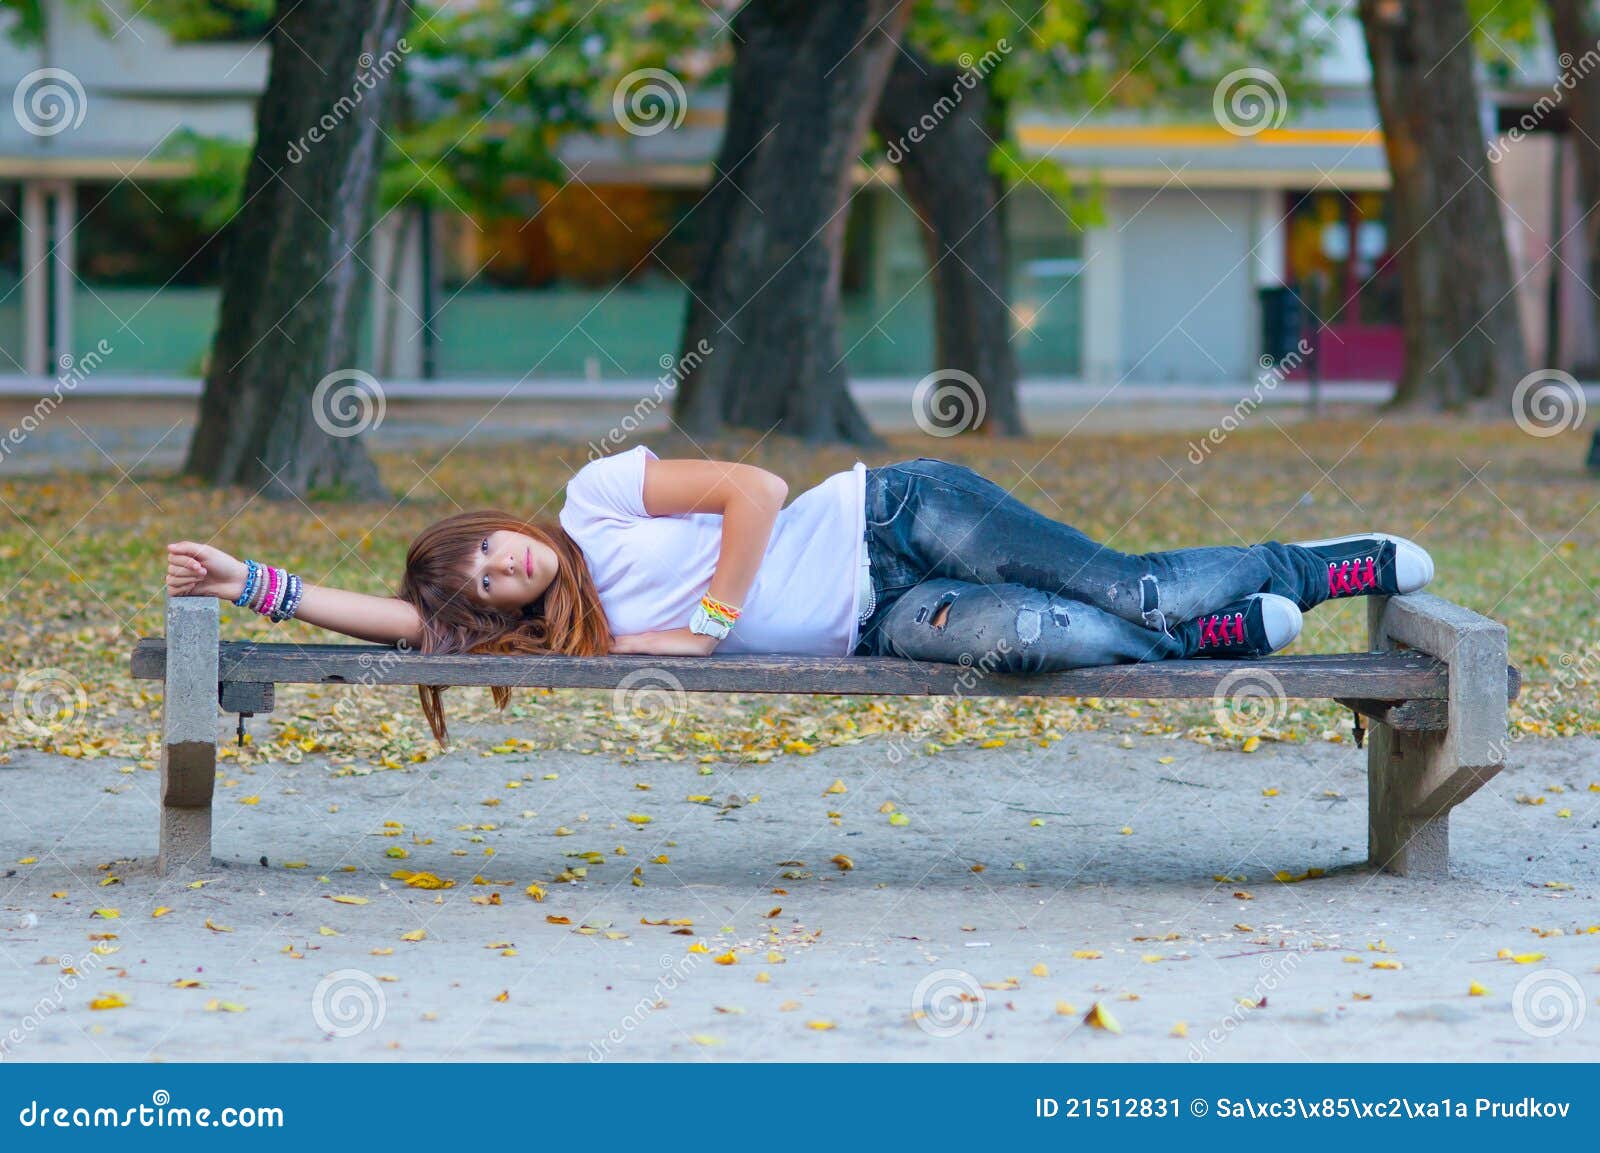 Девушка валяется на улице. Девушка лежит на скамейке. Пьяные женщины на скамейке. Пьяные позируют